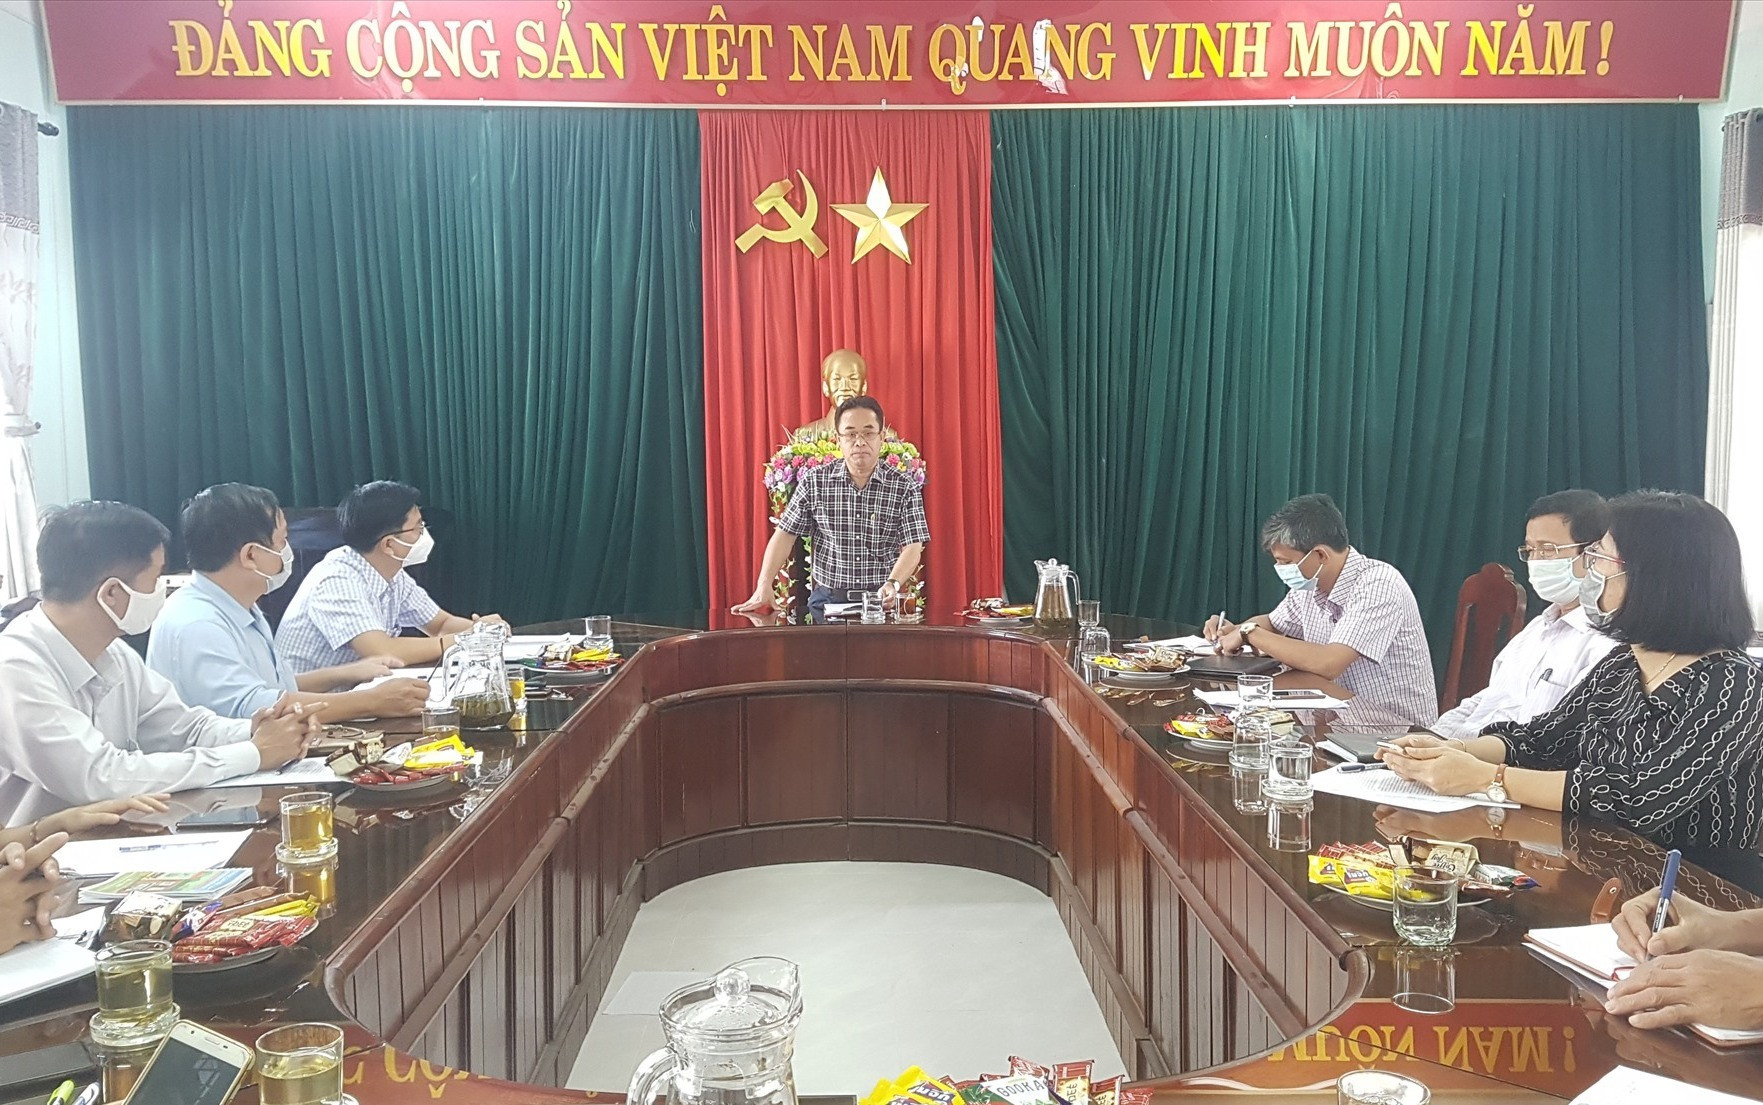 Phó Chủ tịch UBND tỉnh Trần Anh Tuấn làm việc với Trung tâm Dịch vụ việc làm tỉnh sáng nay. Ảnh: D.L